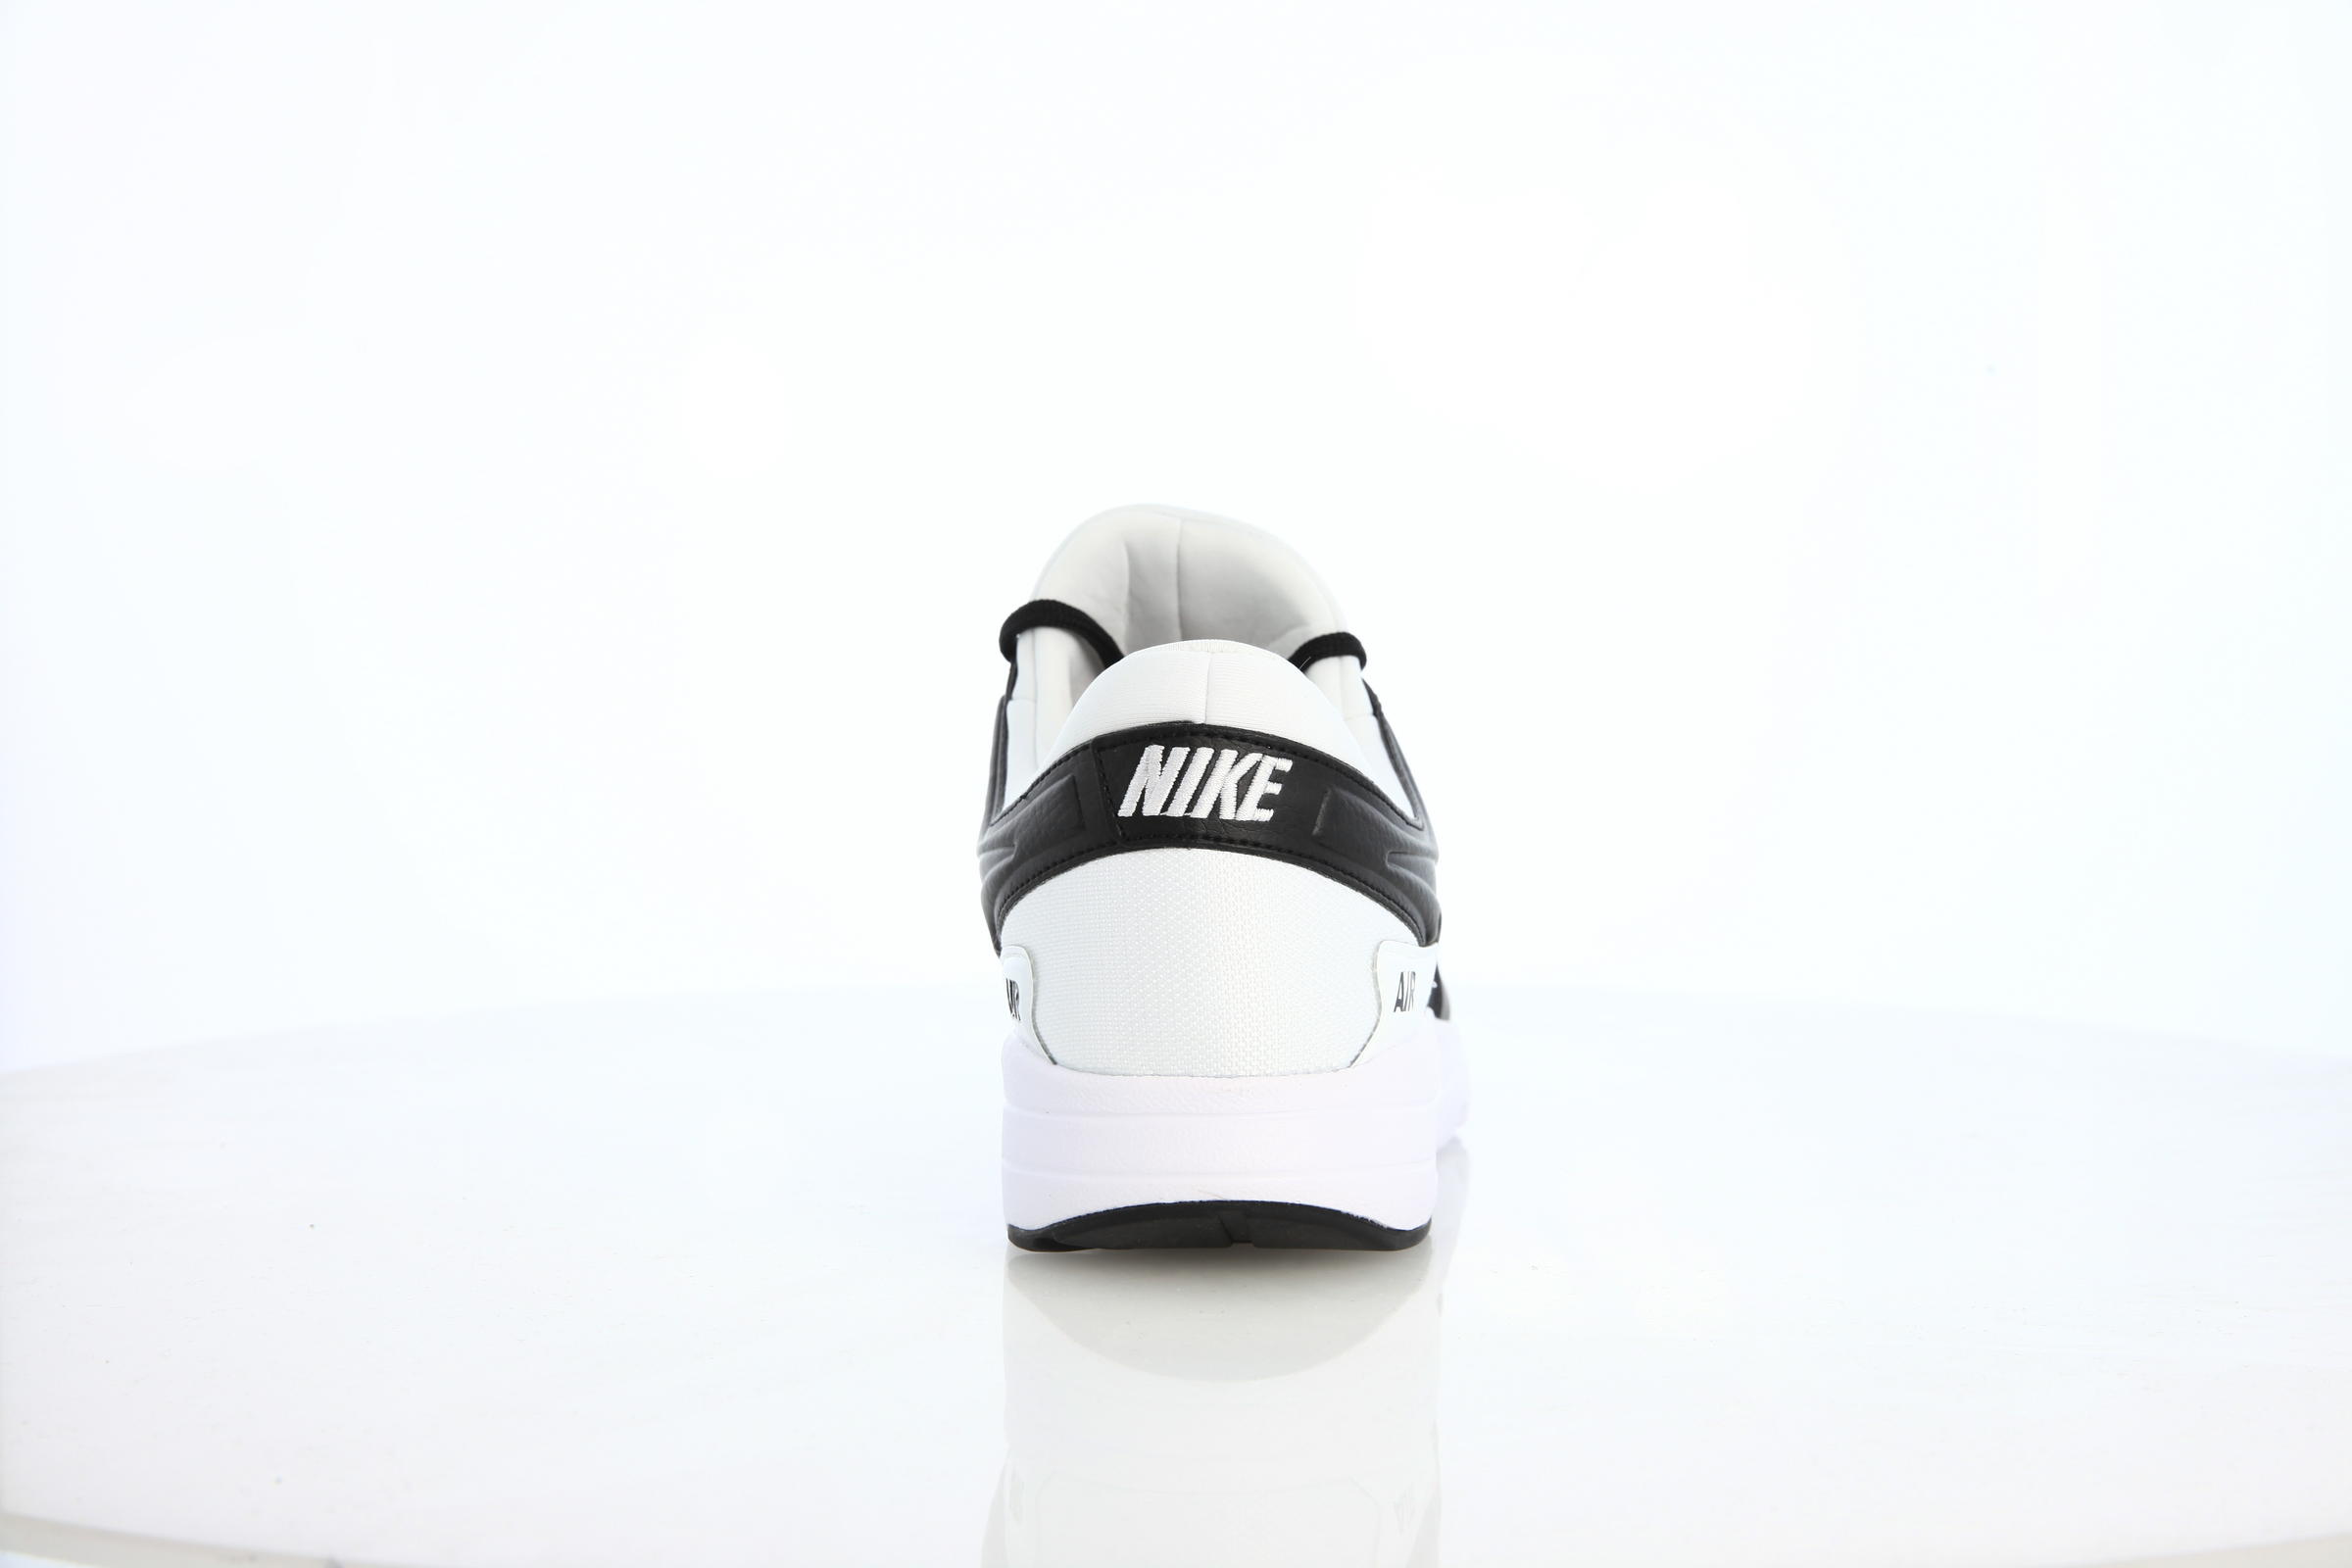 Nike Air Max Zero Premium "Black"